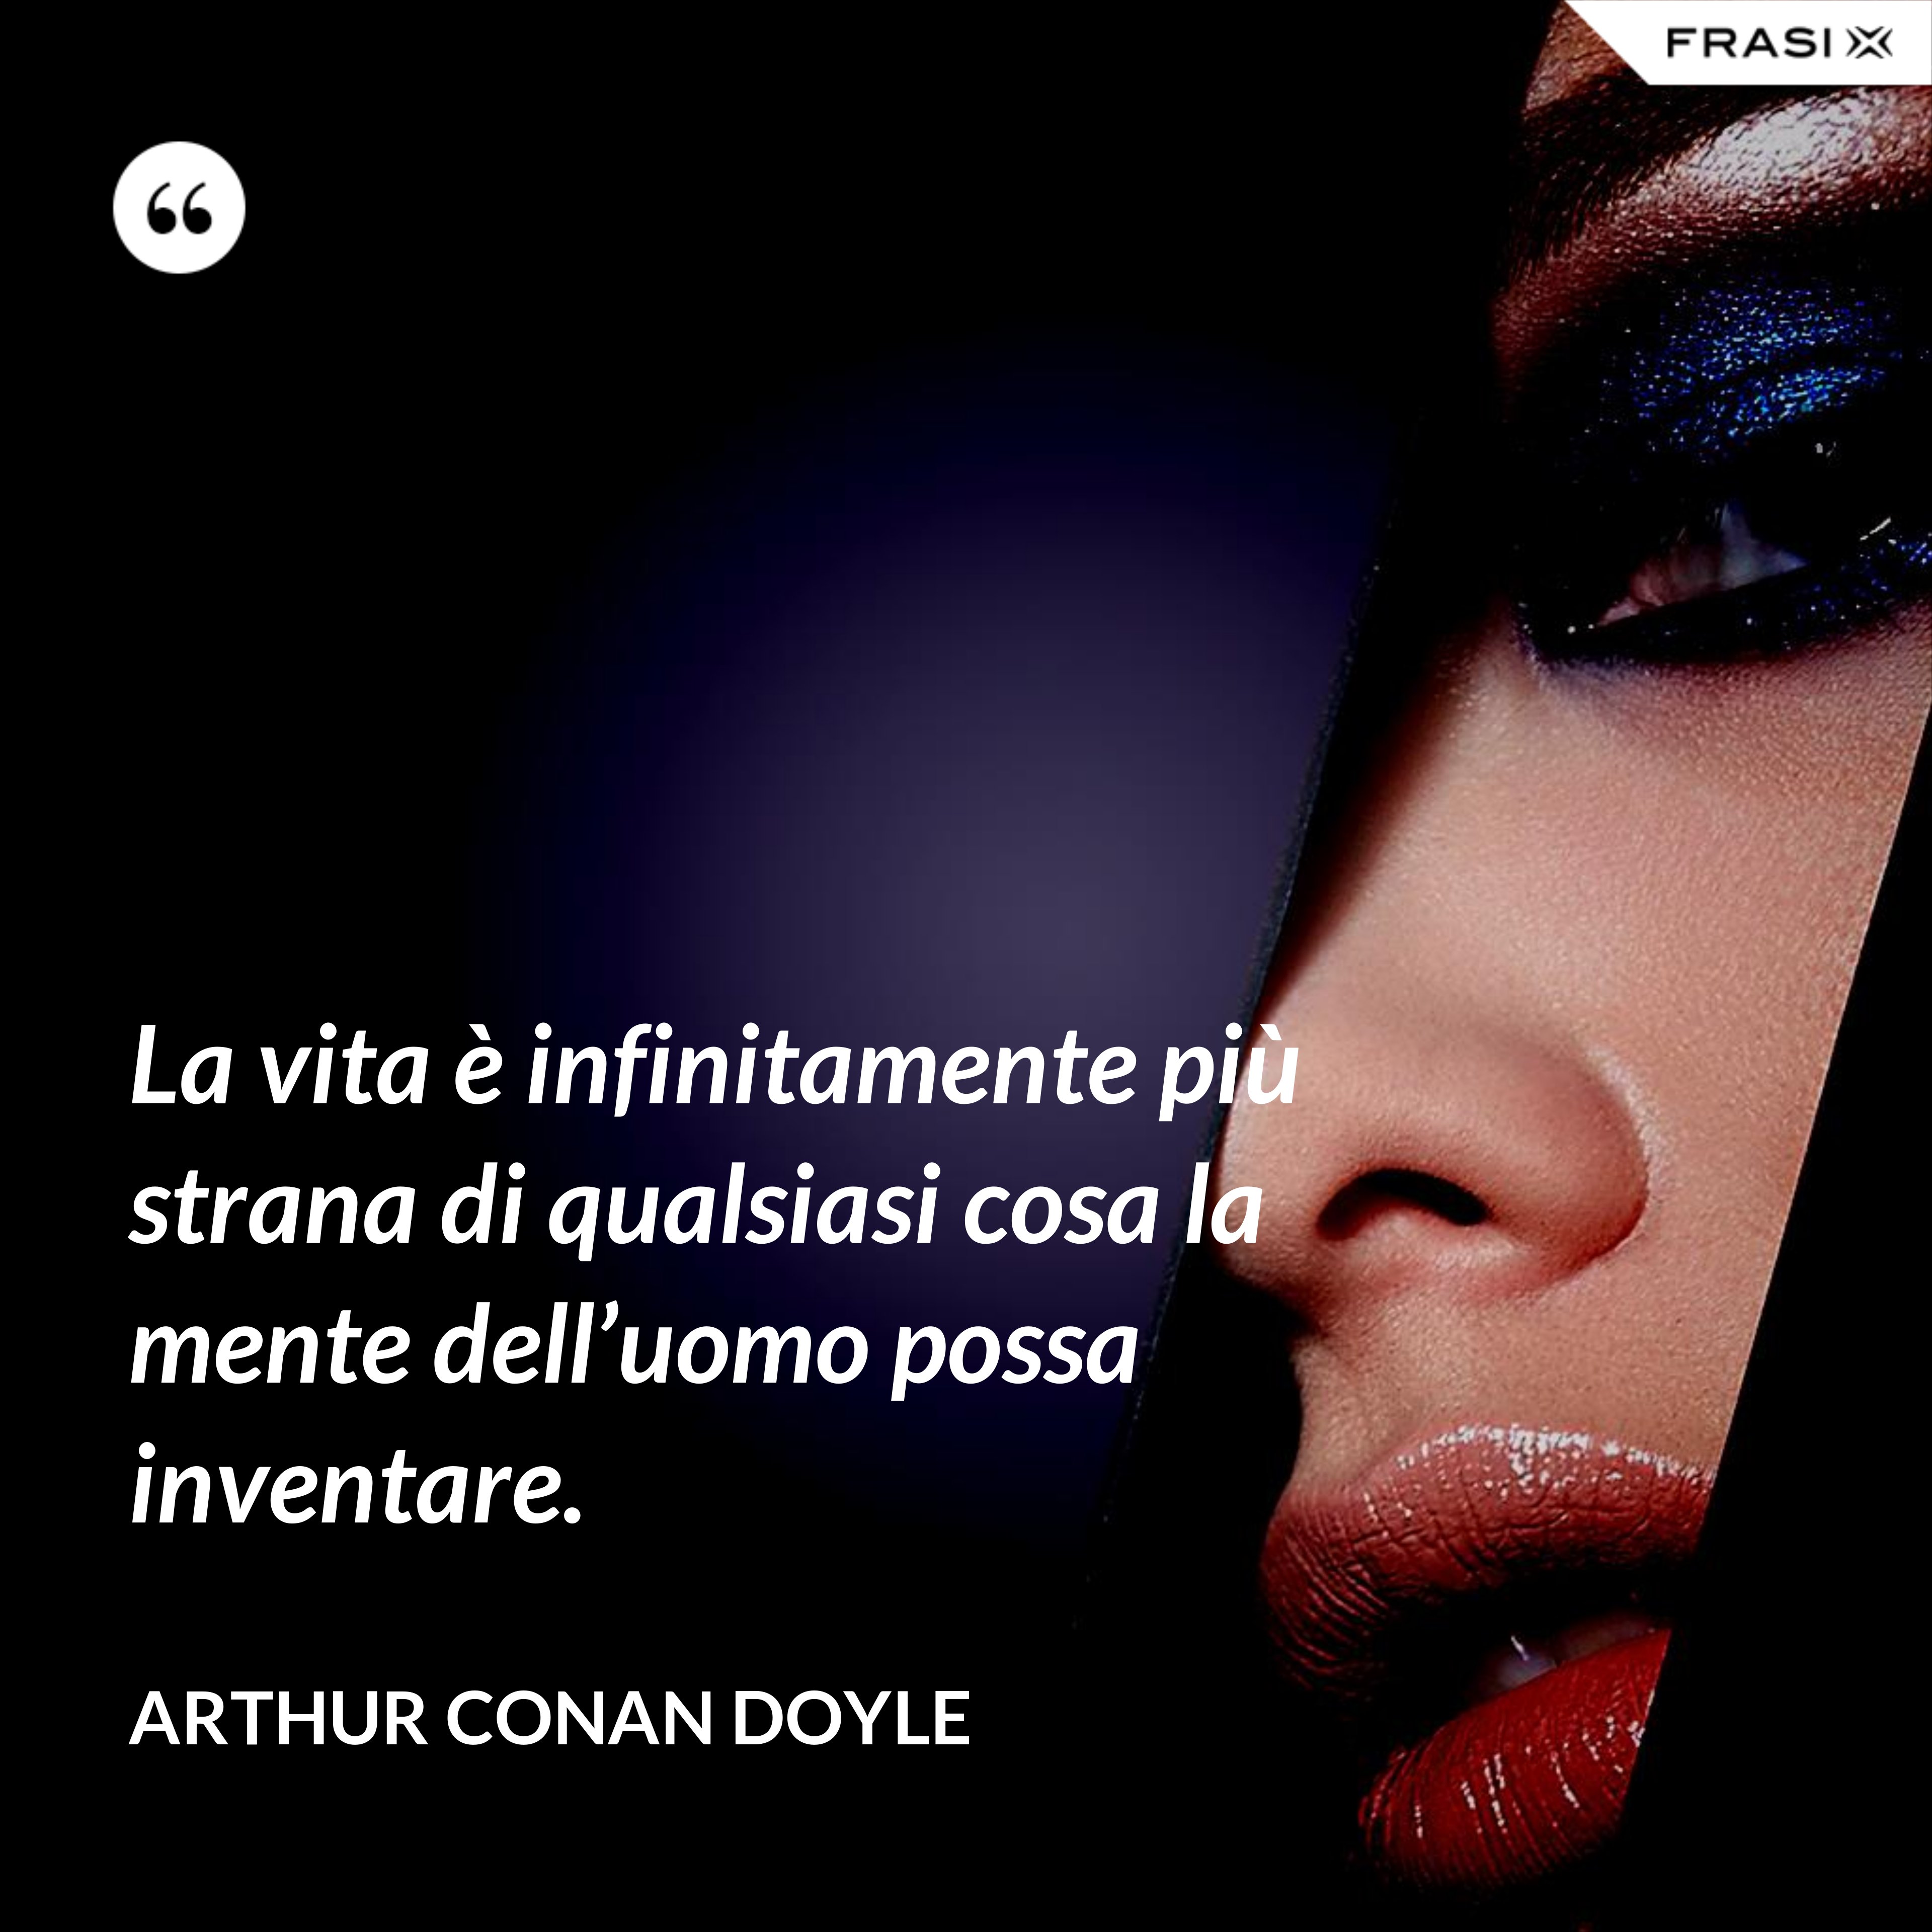 La vita è infinitamente più strana di qualsiasi cosa la mente dell’uomo possa inventare. - Arthur Conan Doyle